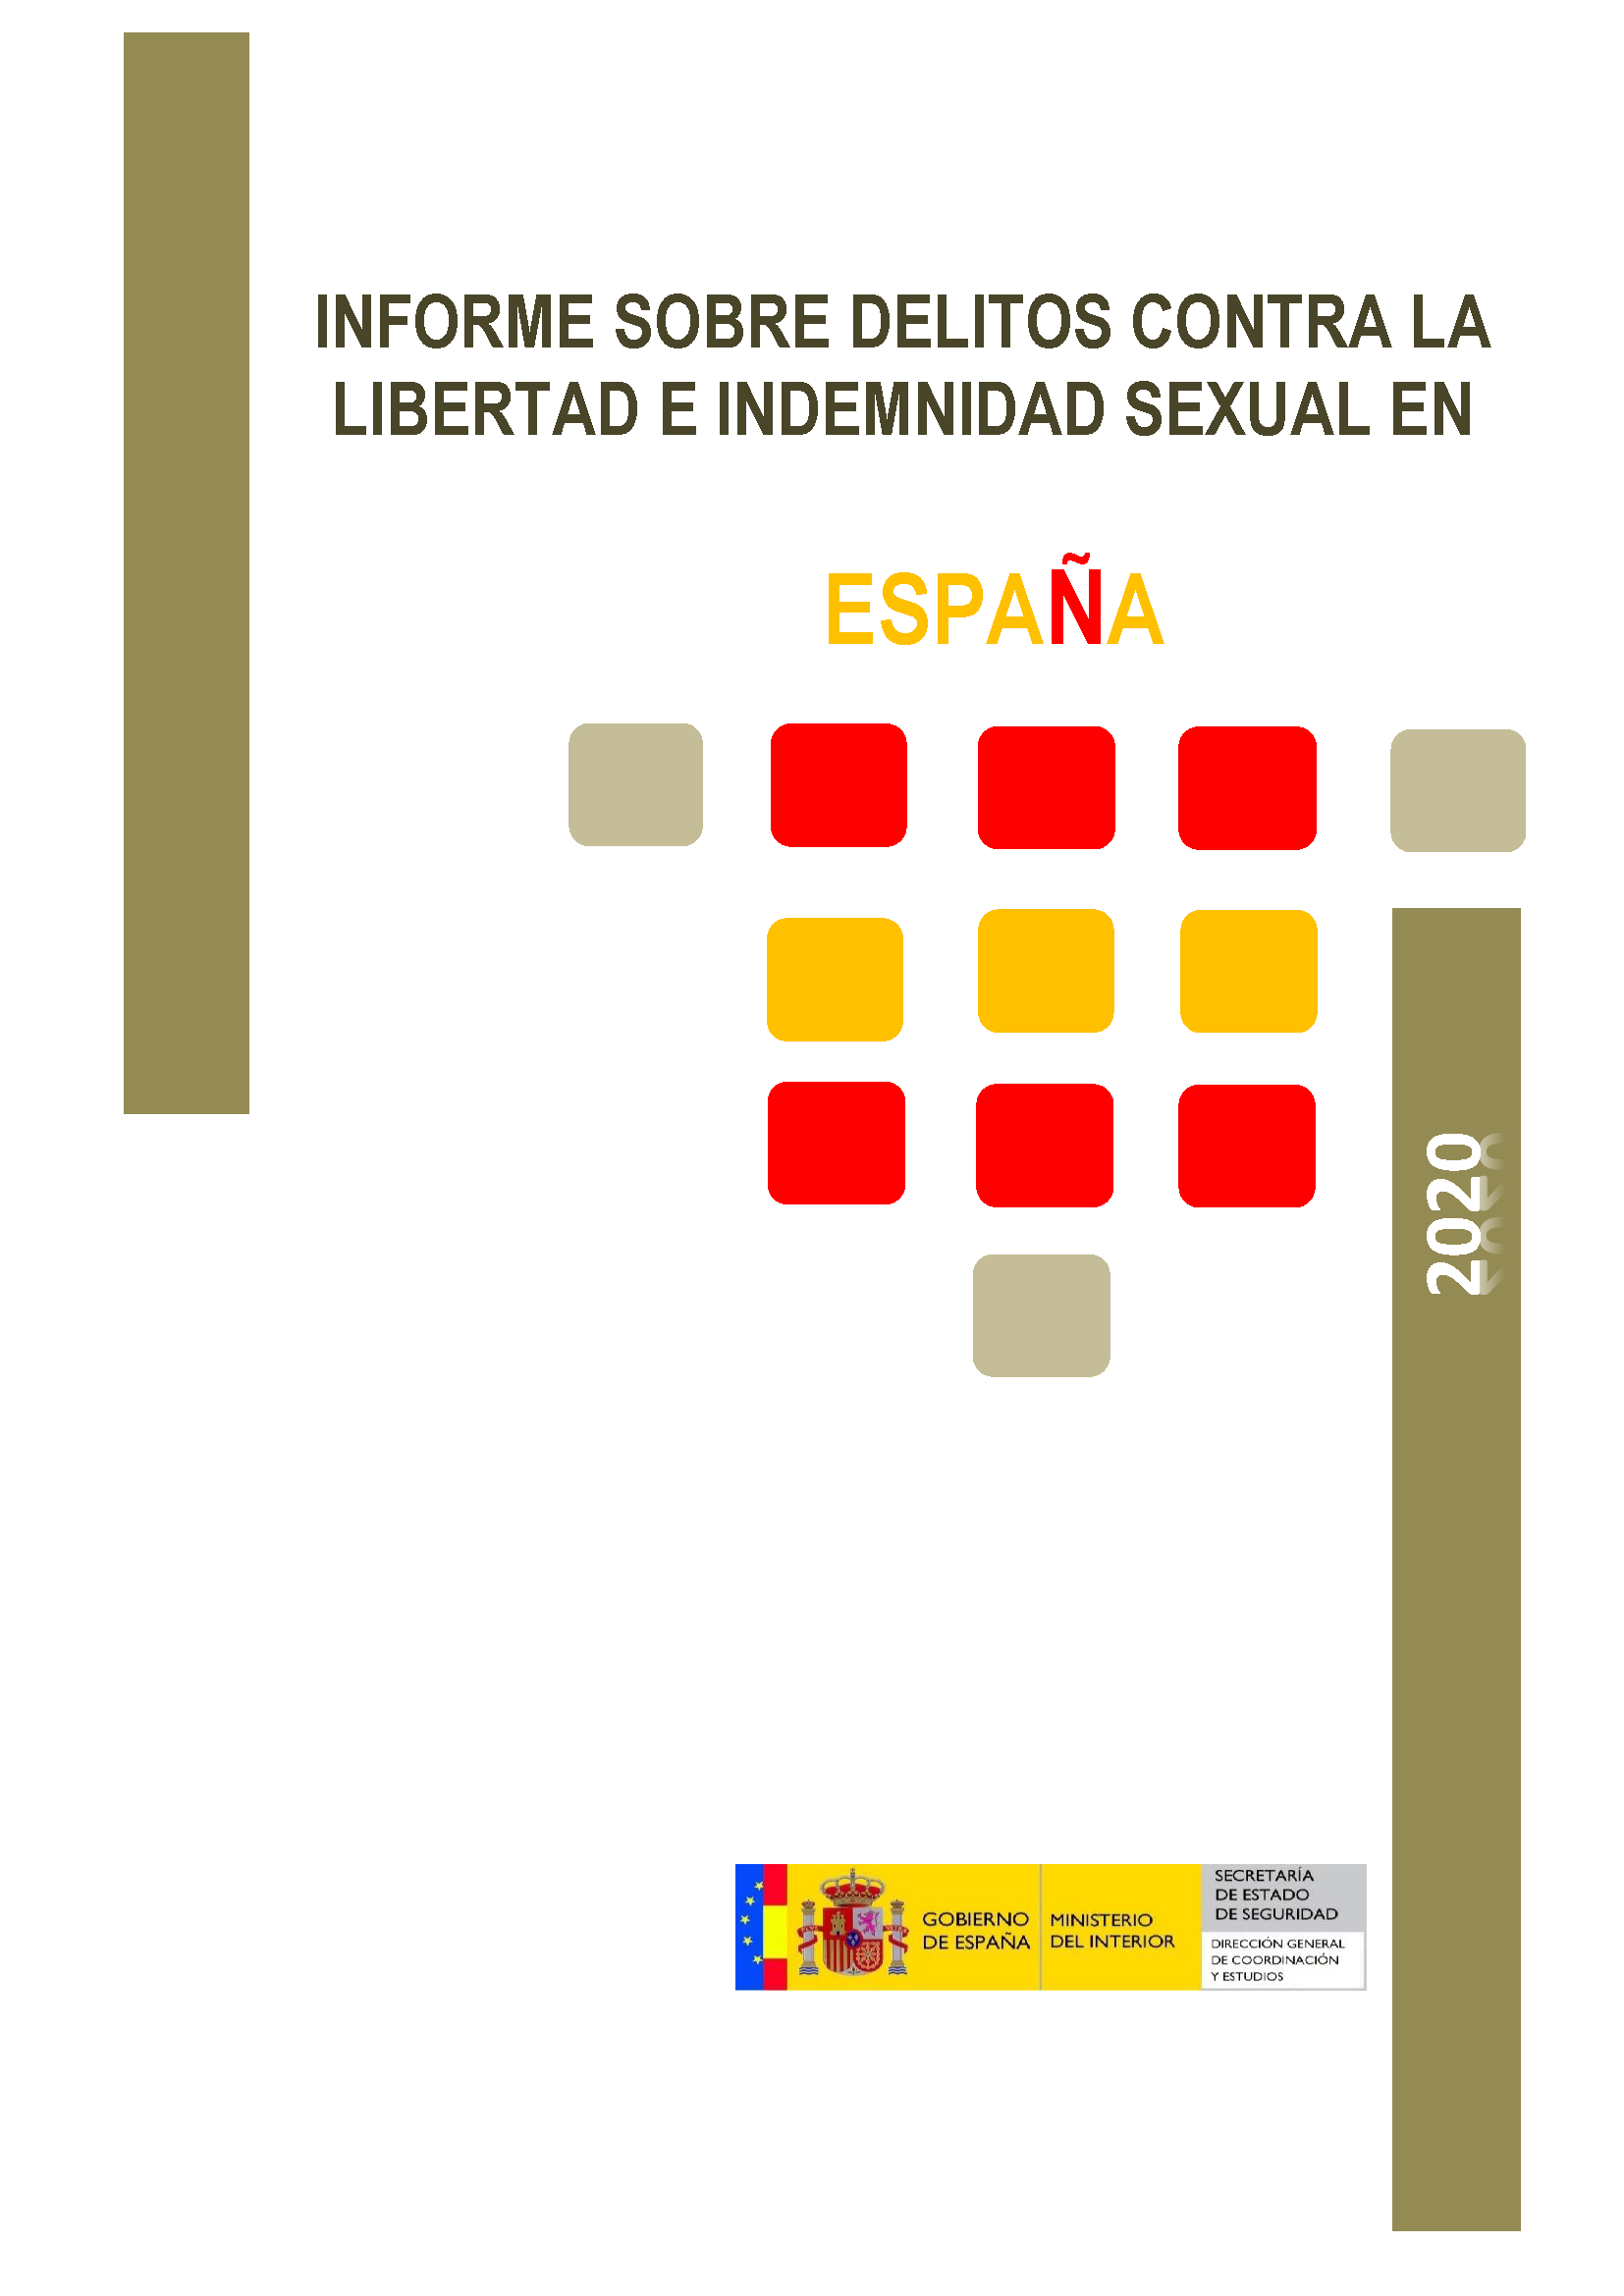 Informe sobre delitos contra la libertad e indemnidad sexual en España 2020